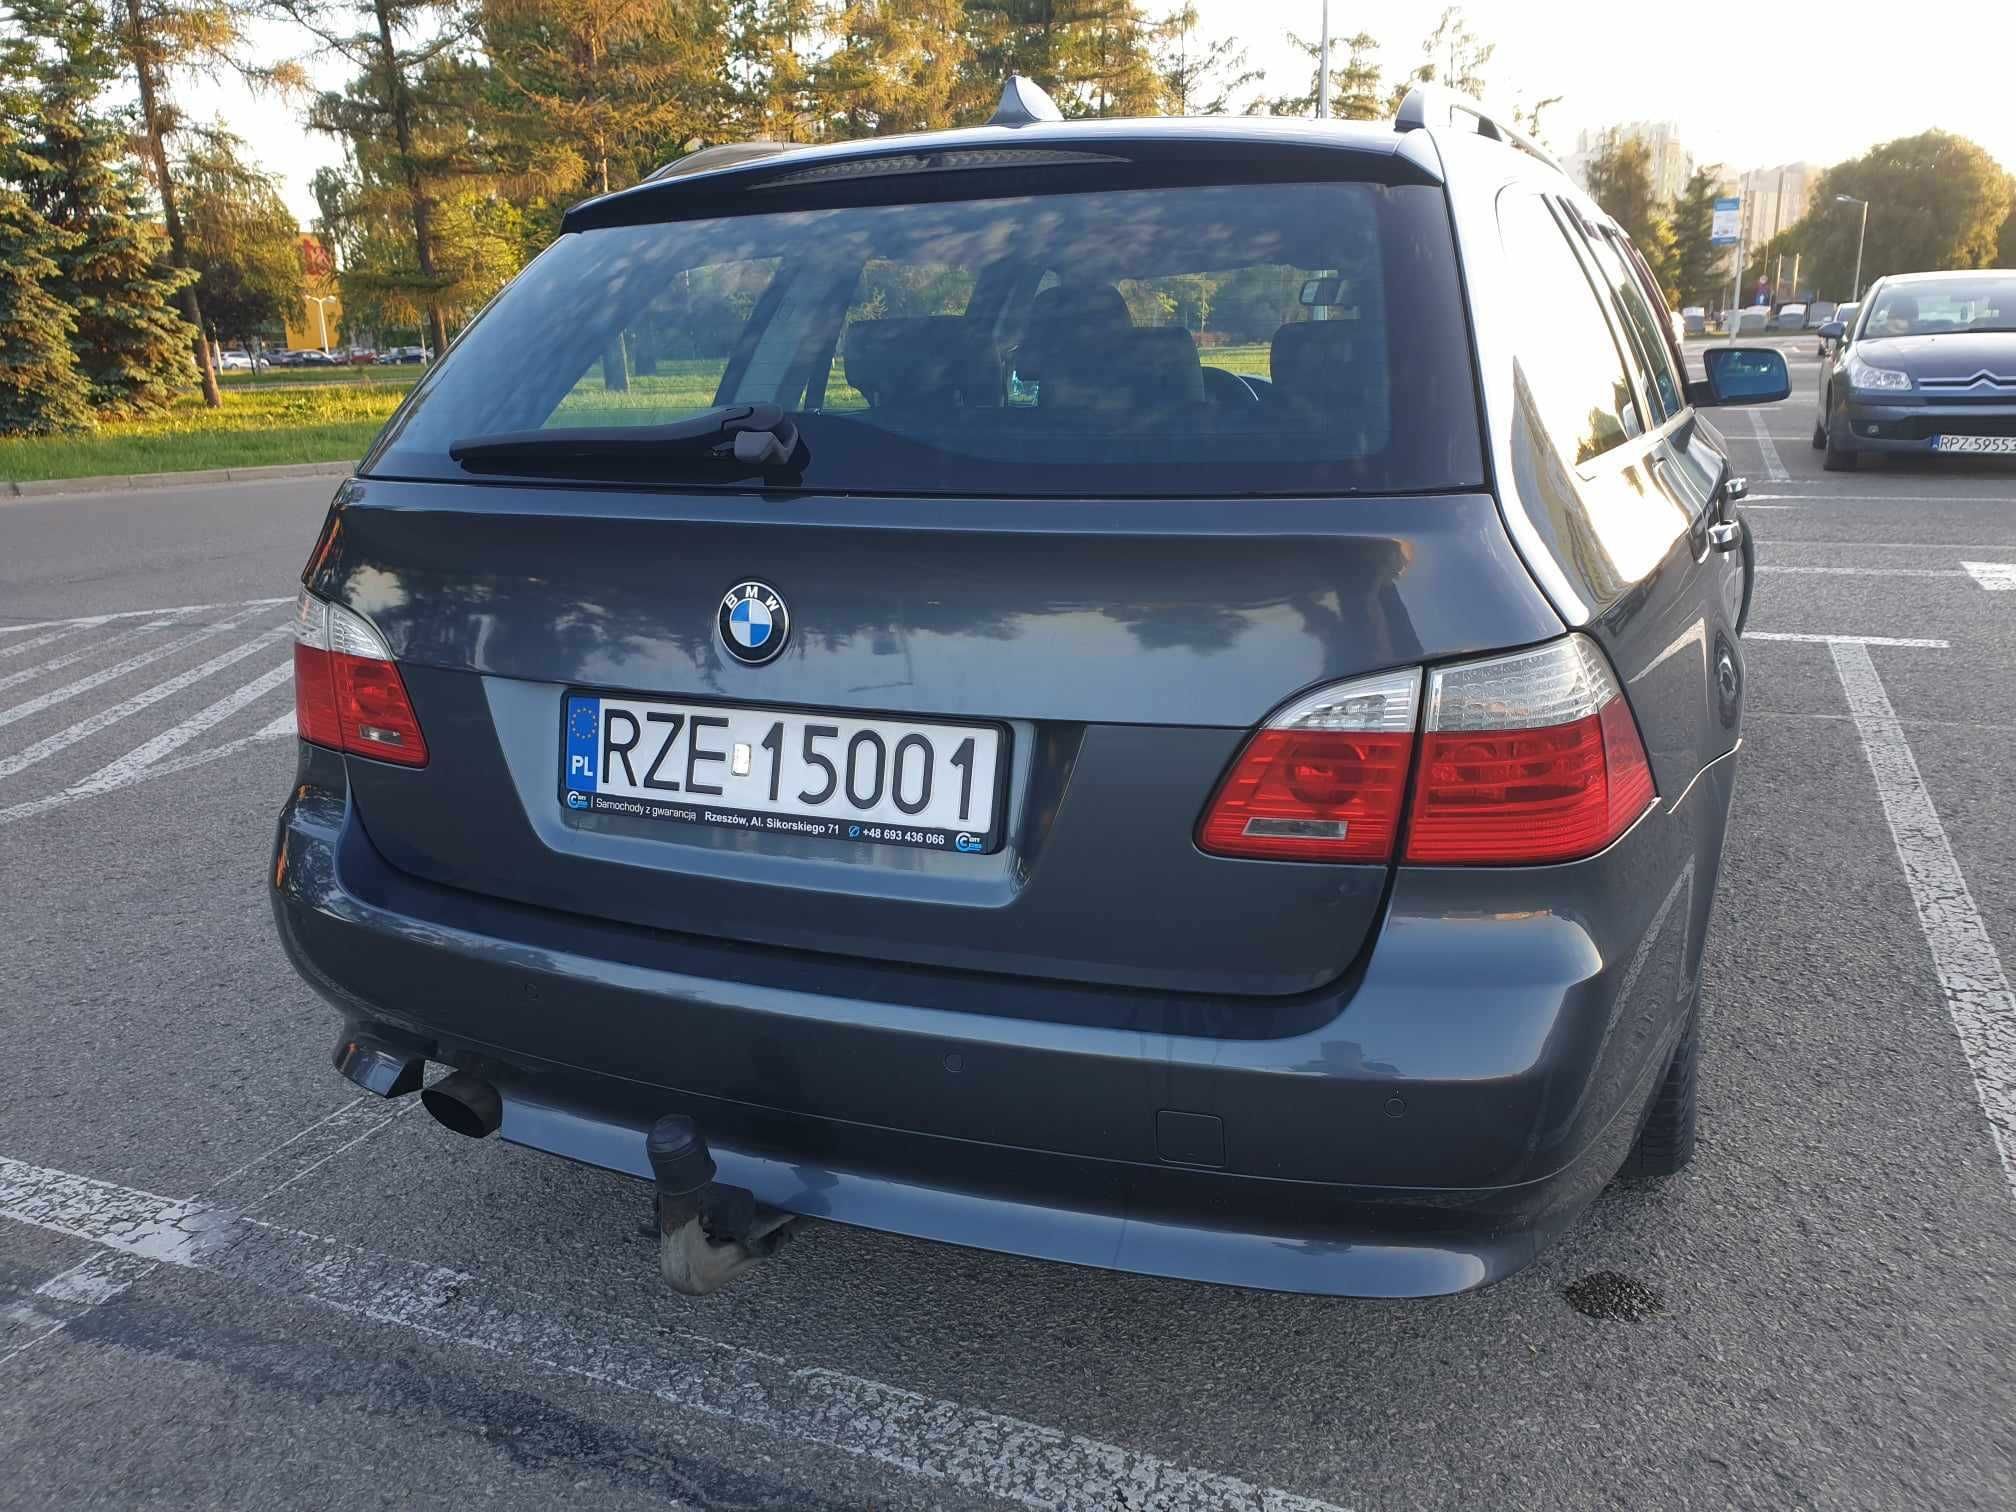 BMW 520d seria 5 E61, 2007r. 2.0 Diesel 163km, manual, polift